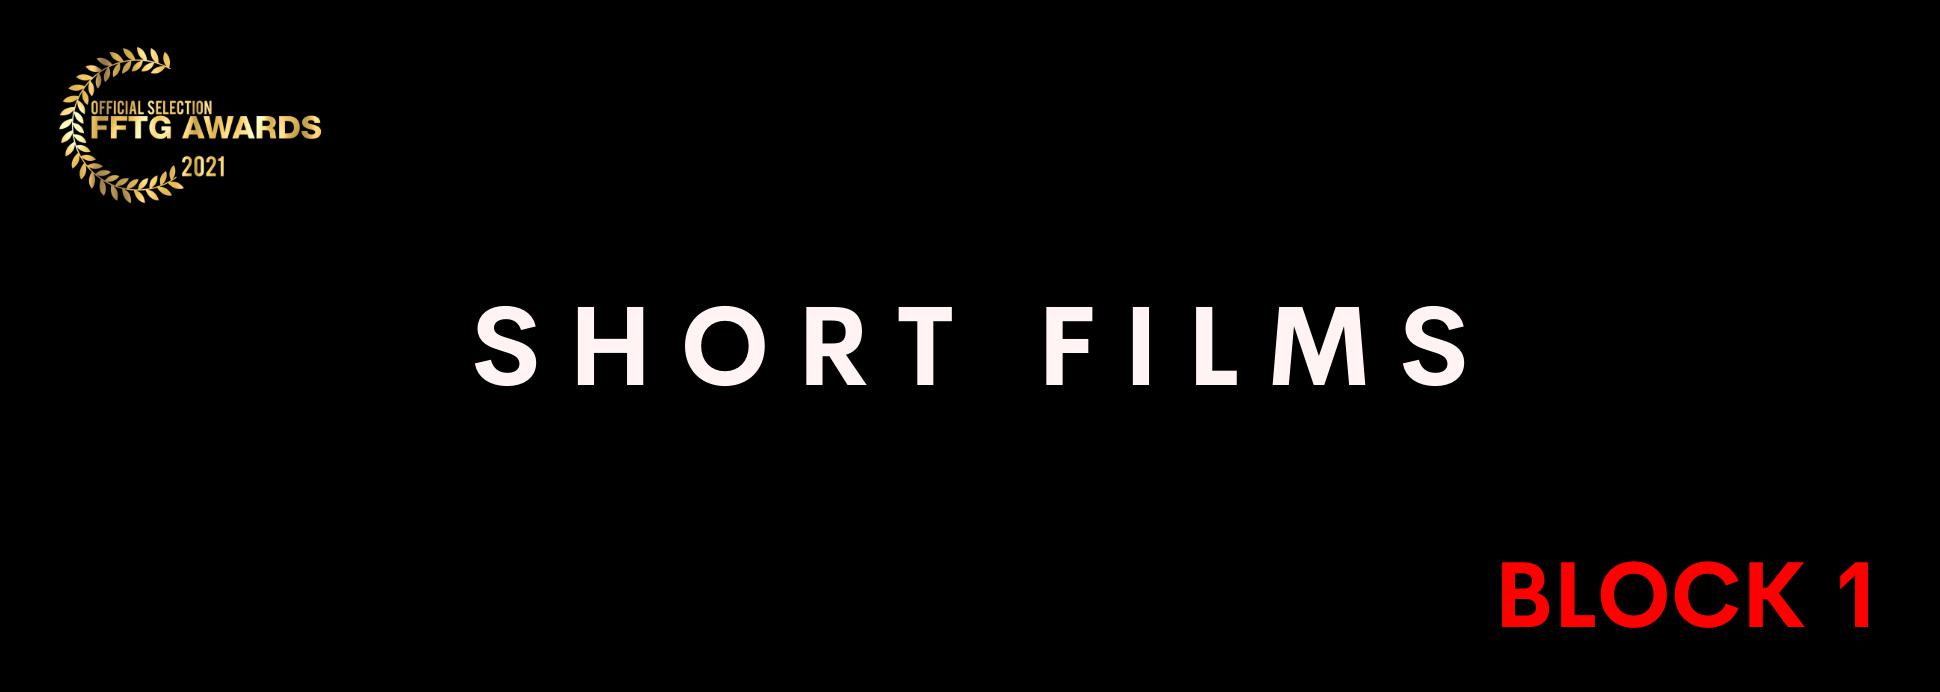 Short film BLOCK 1